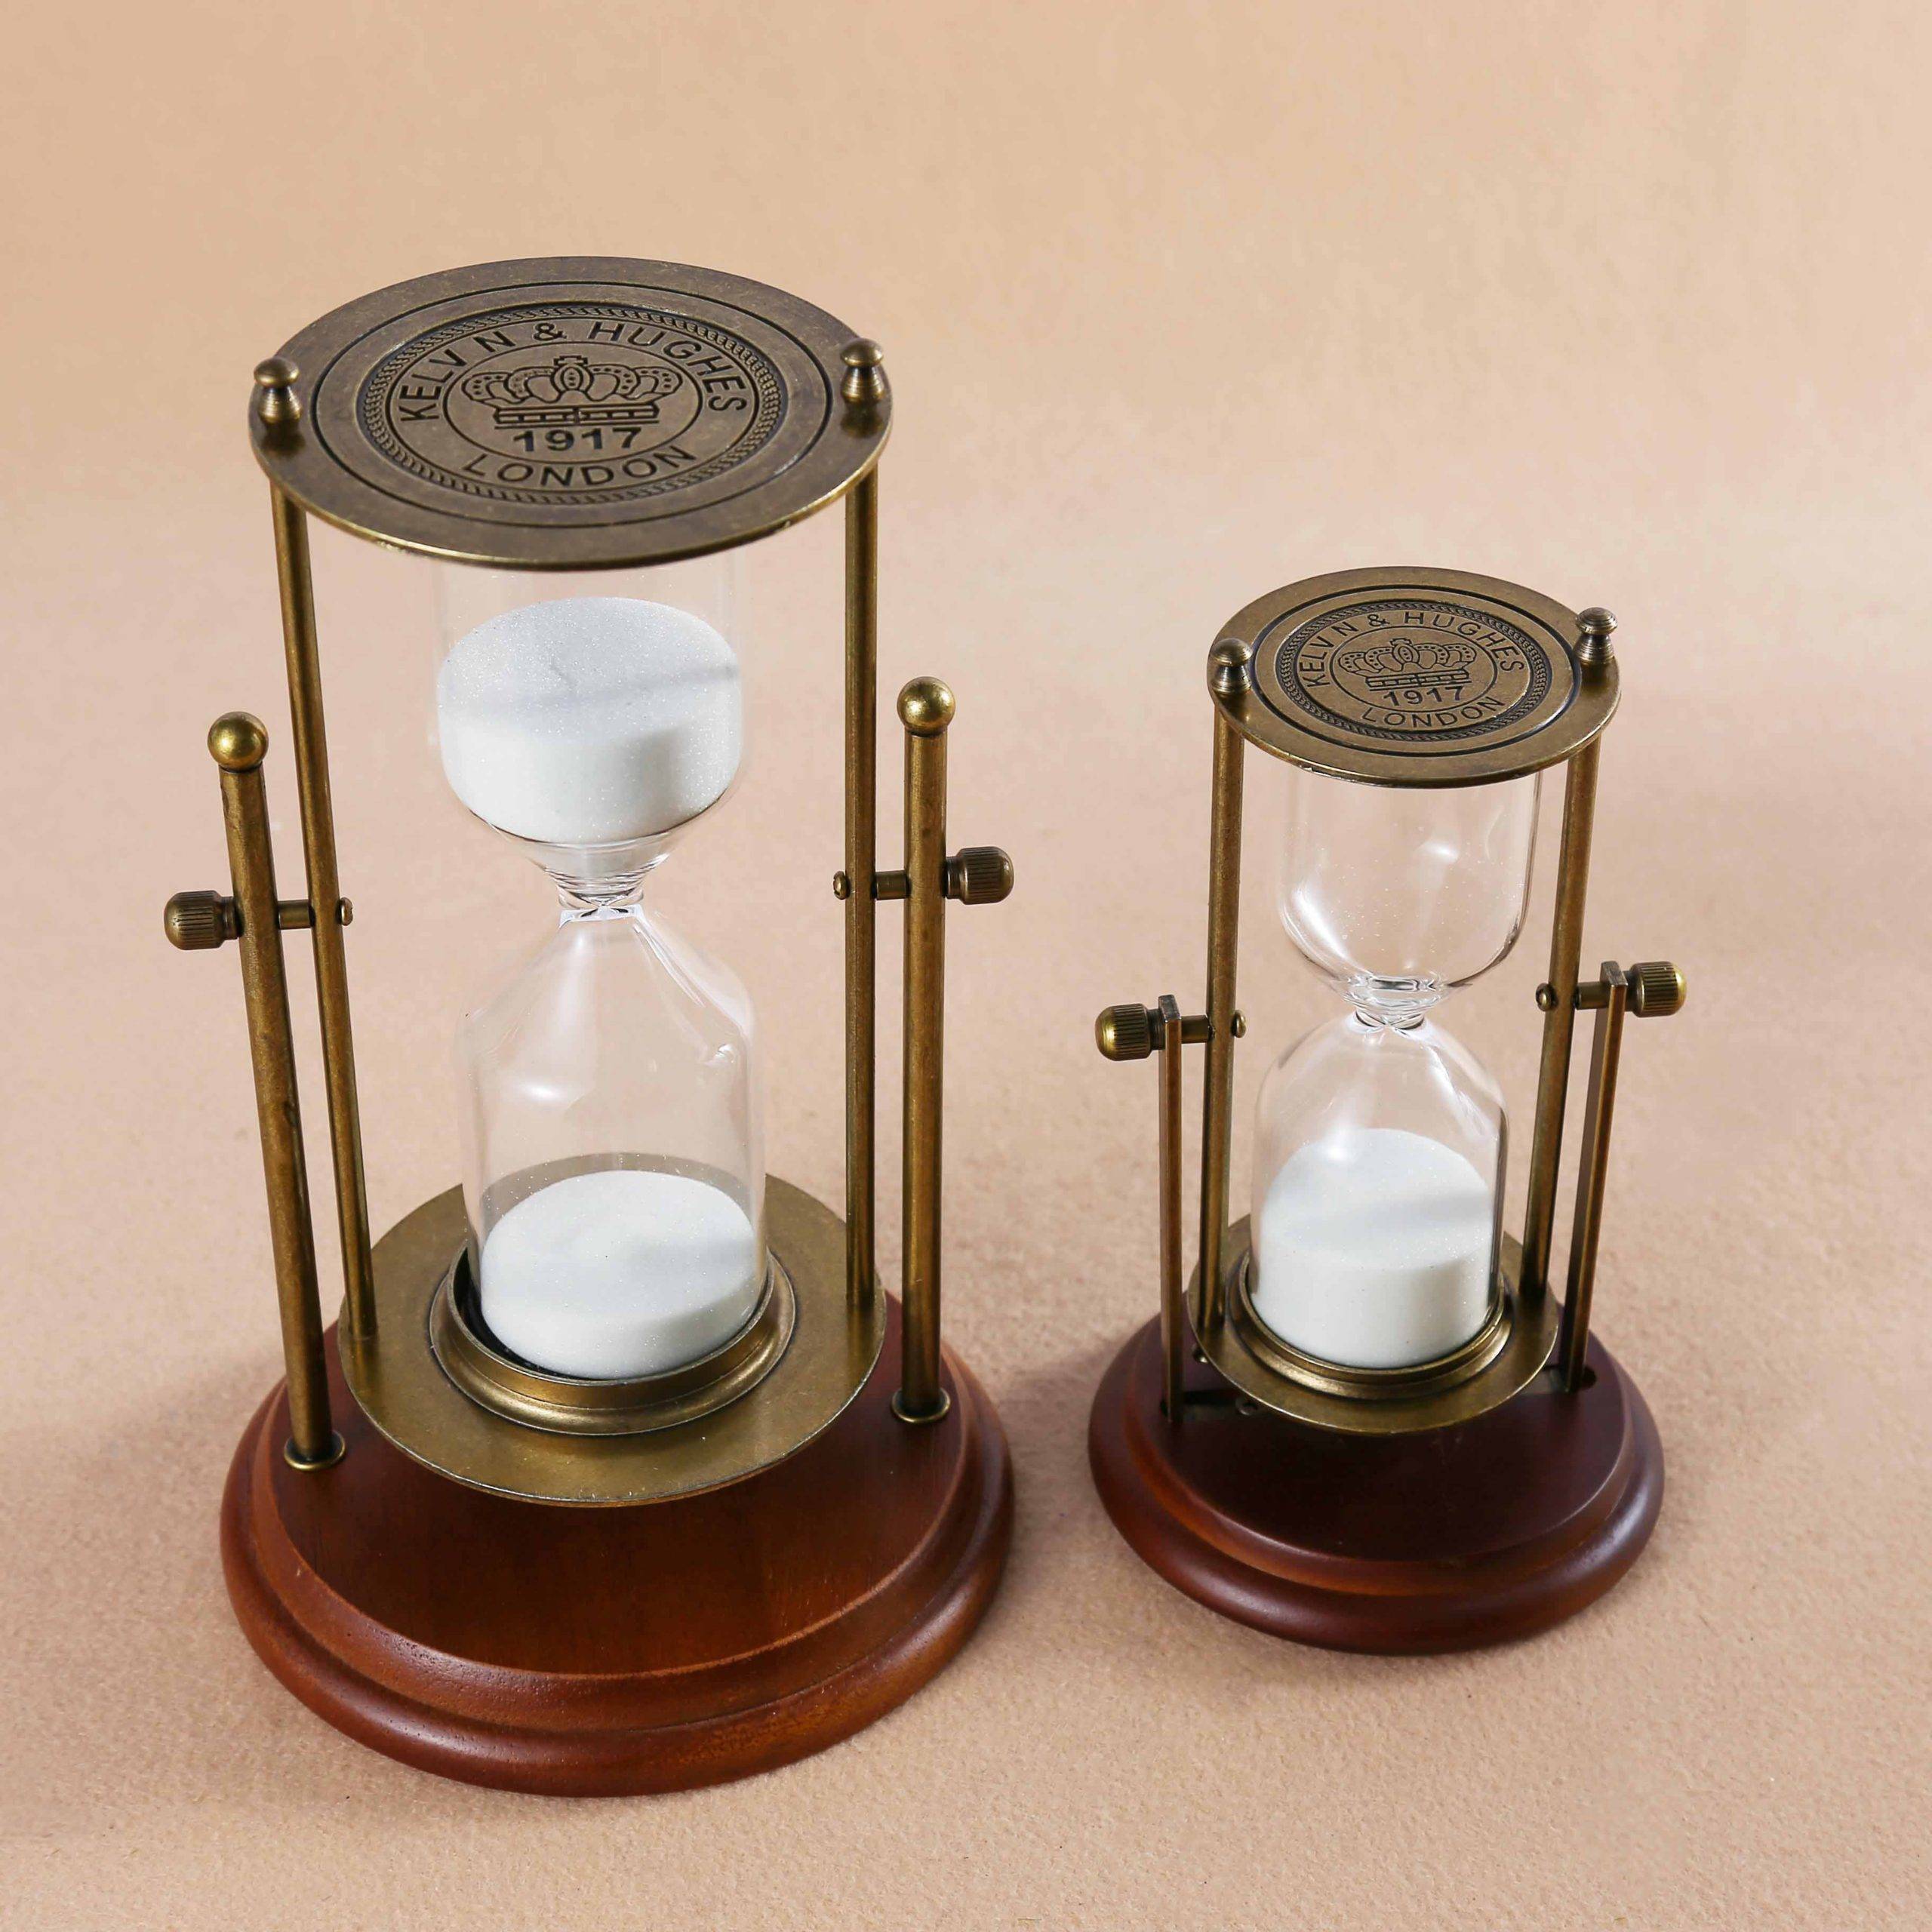 Mandel Hourglass Decor | Kwickshop